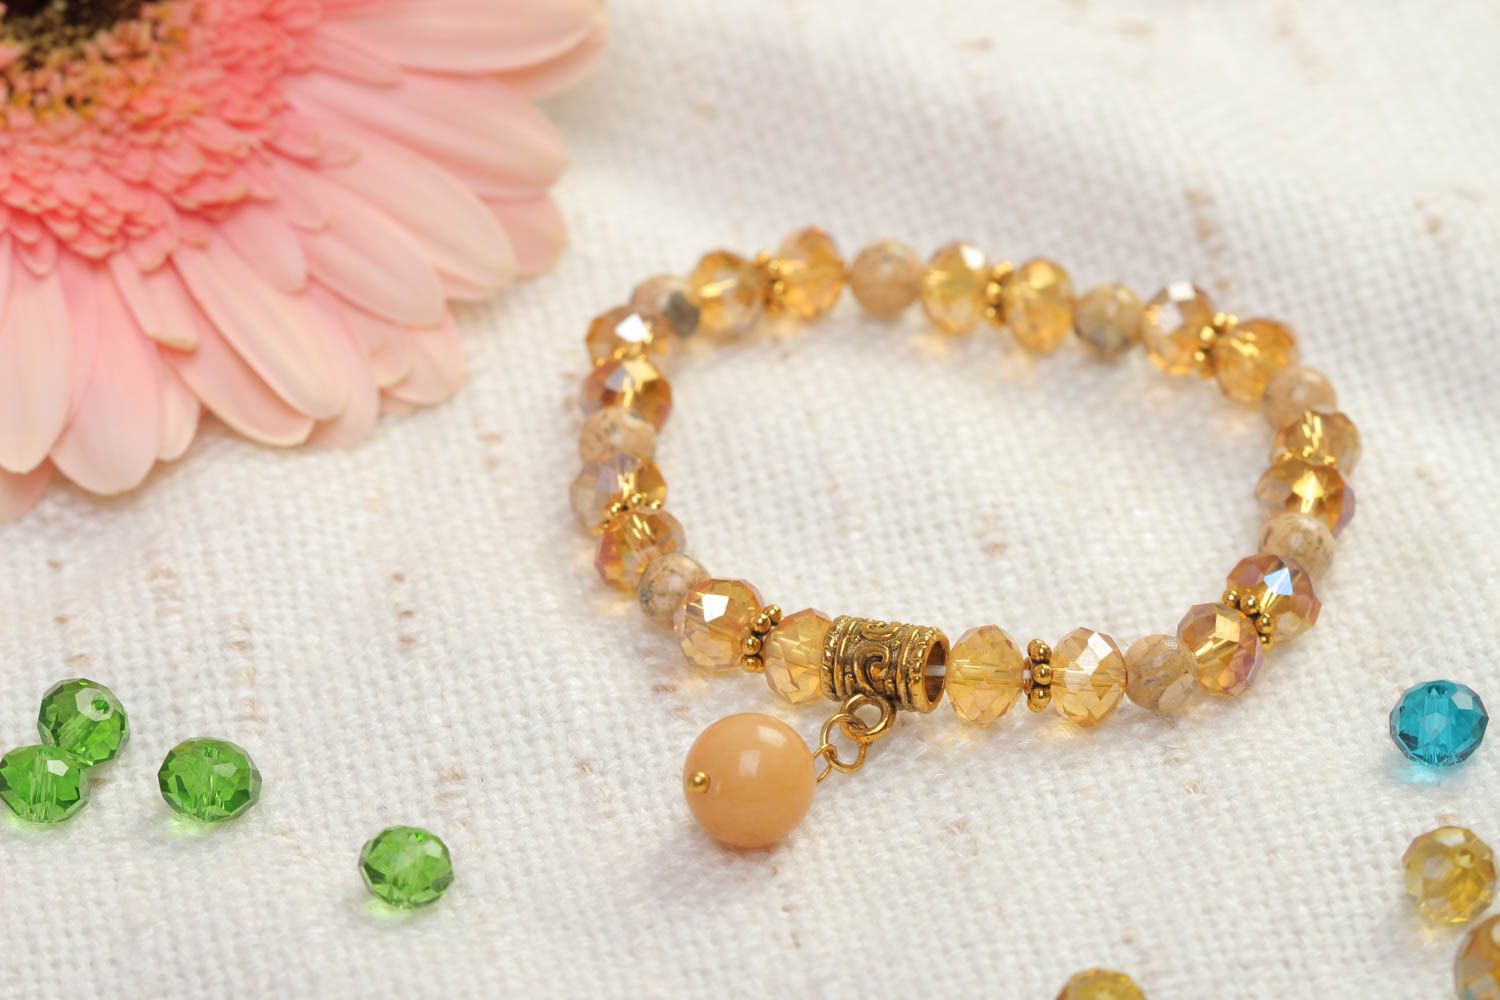 Stone beige beads' charm tennis bracelet for teen girl photo 1